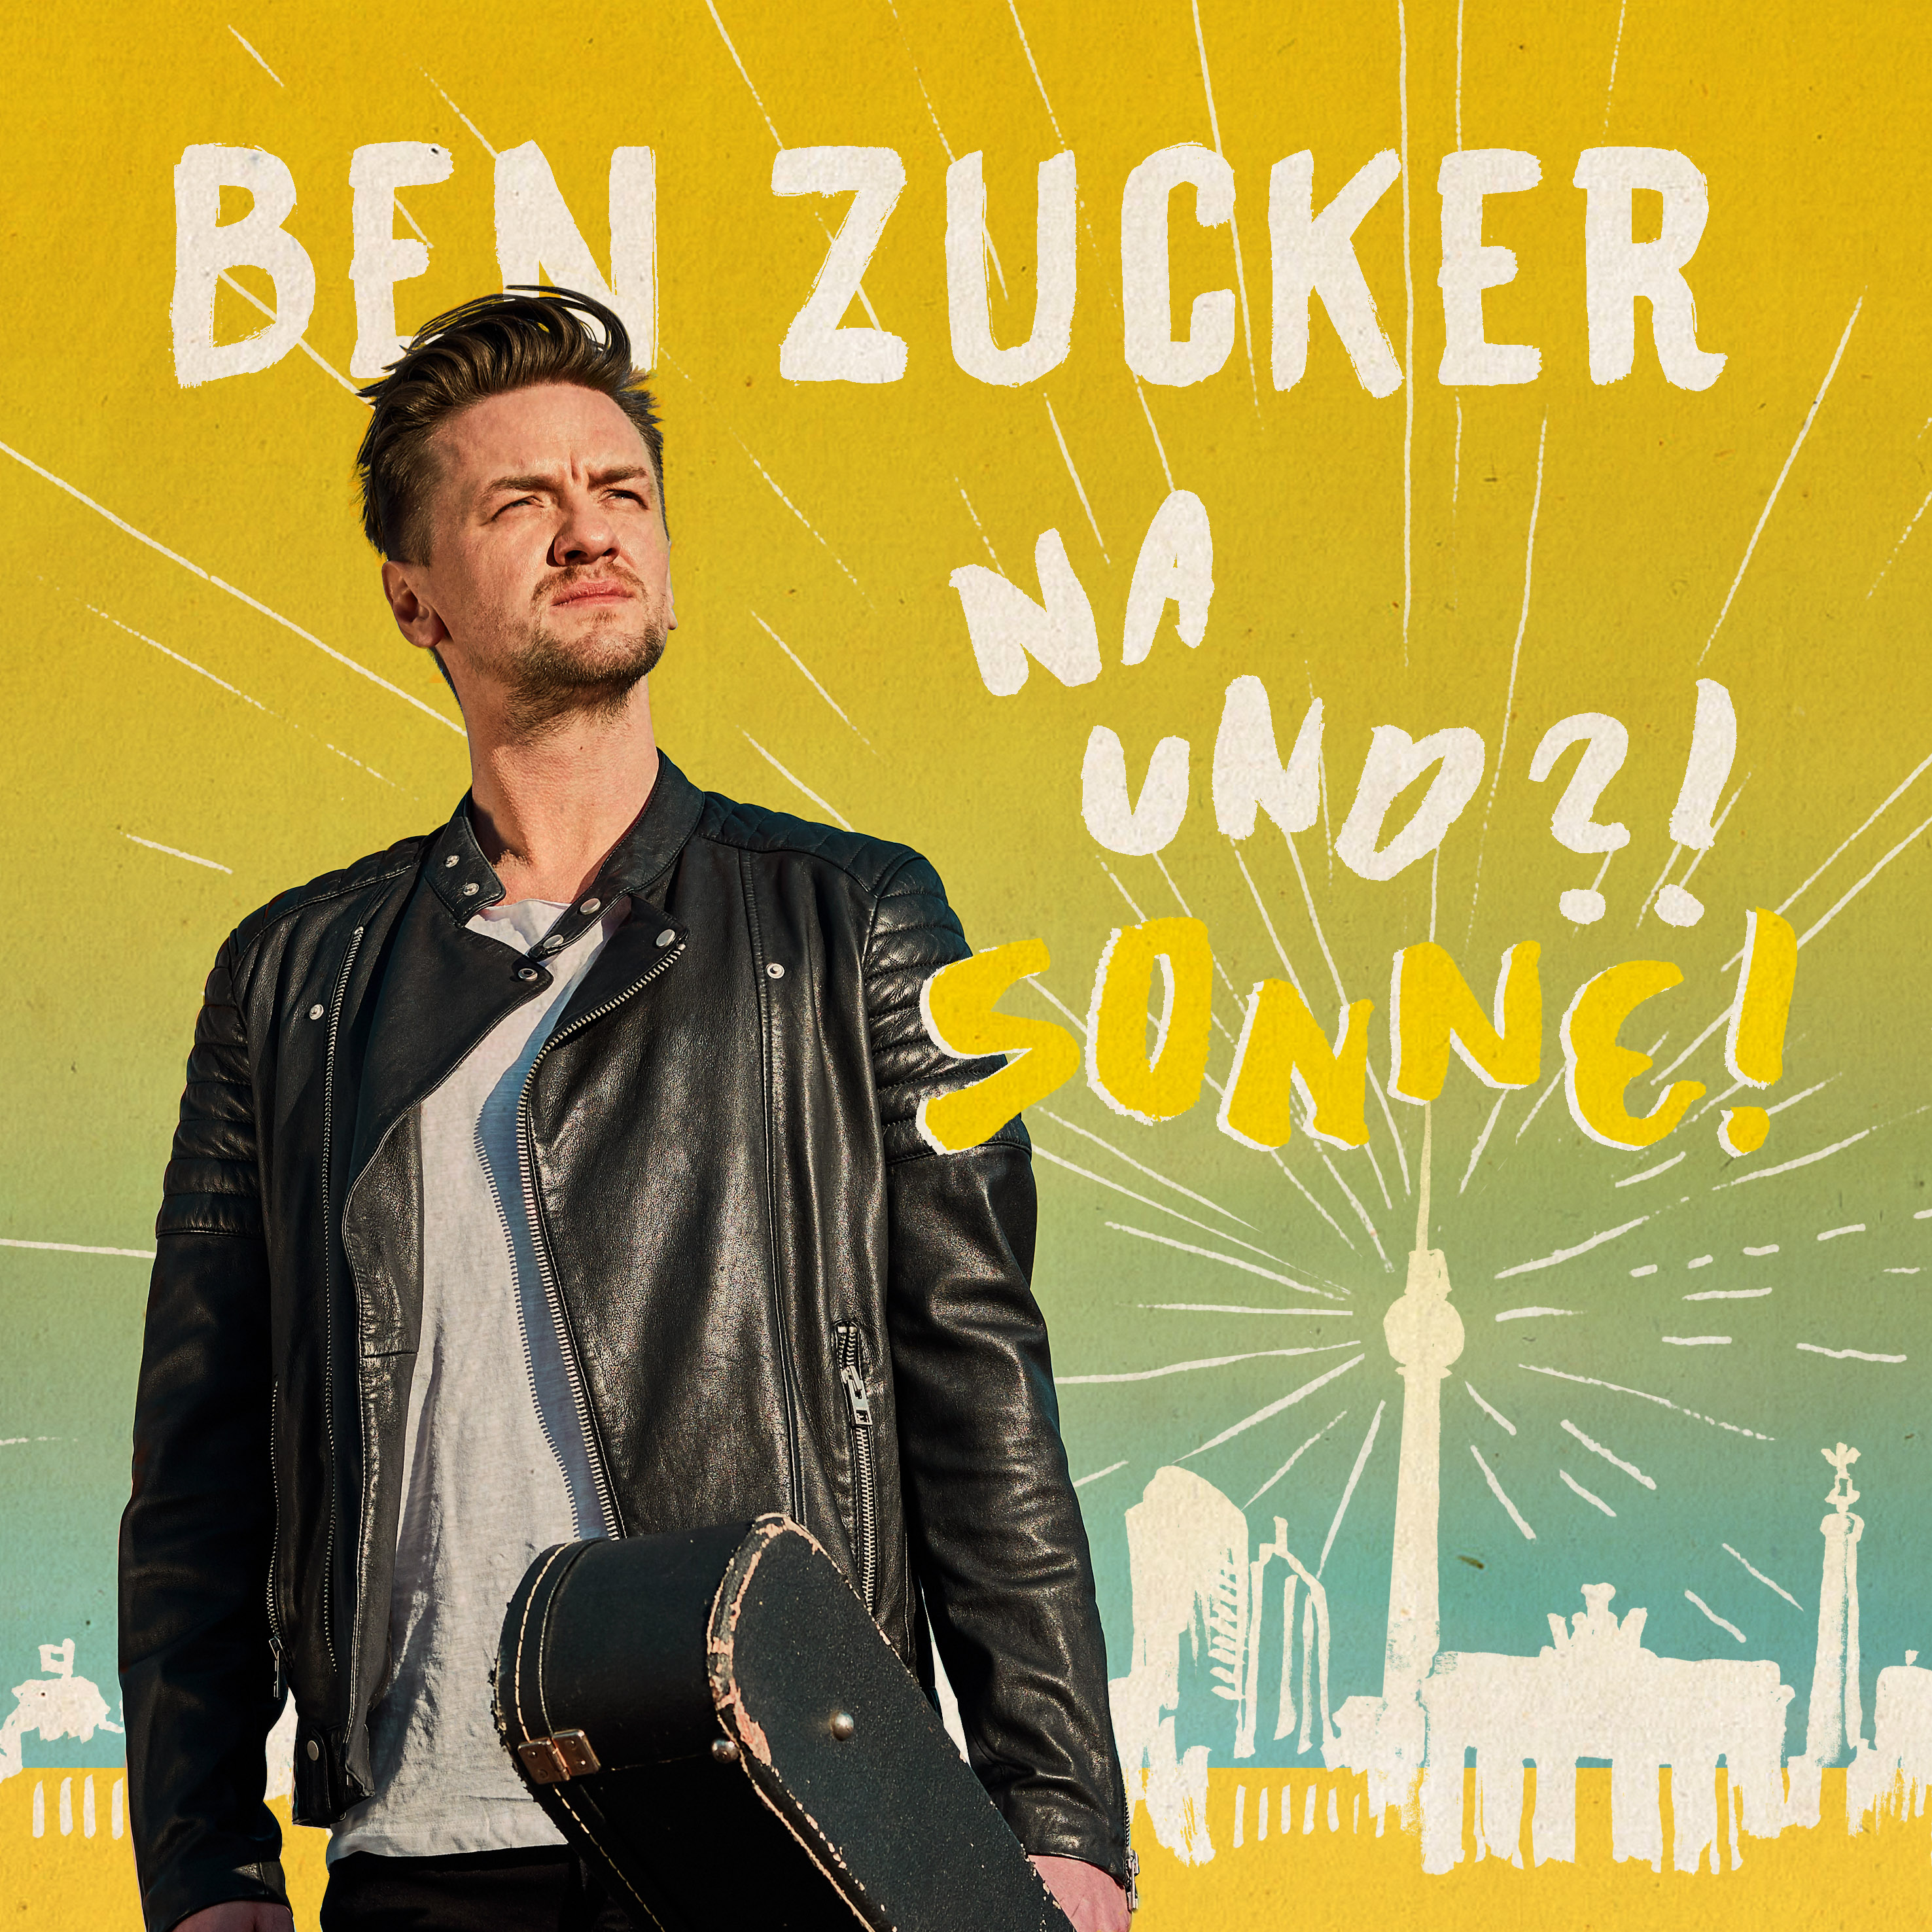 Ben Zucker Na und Sonne Album